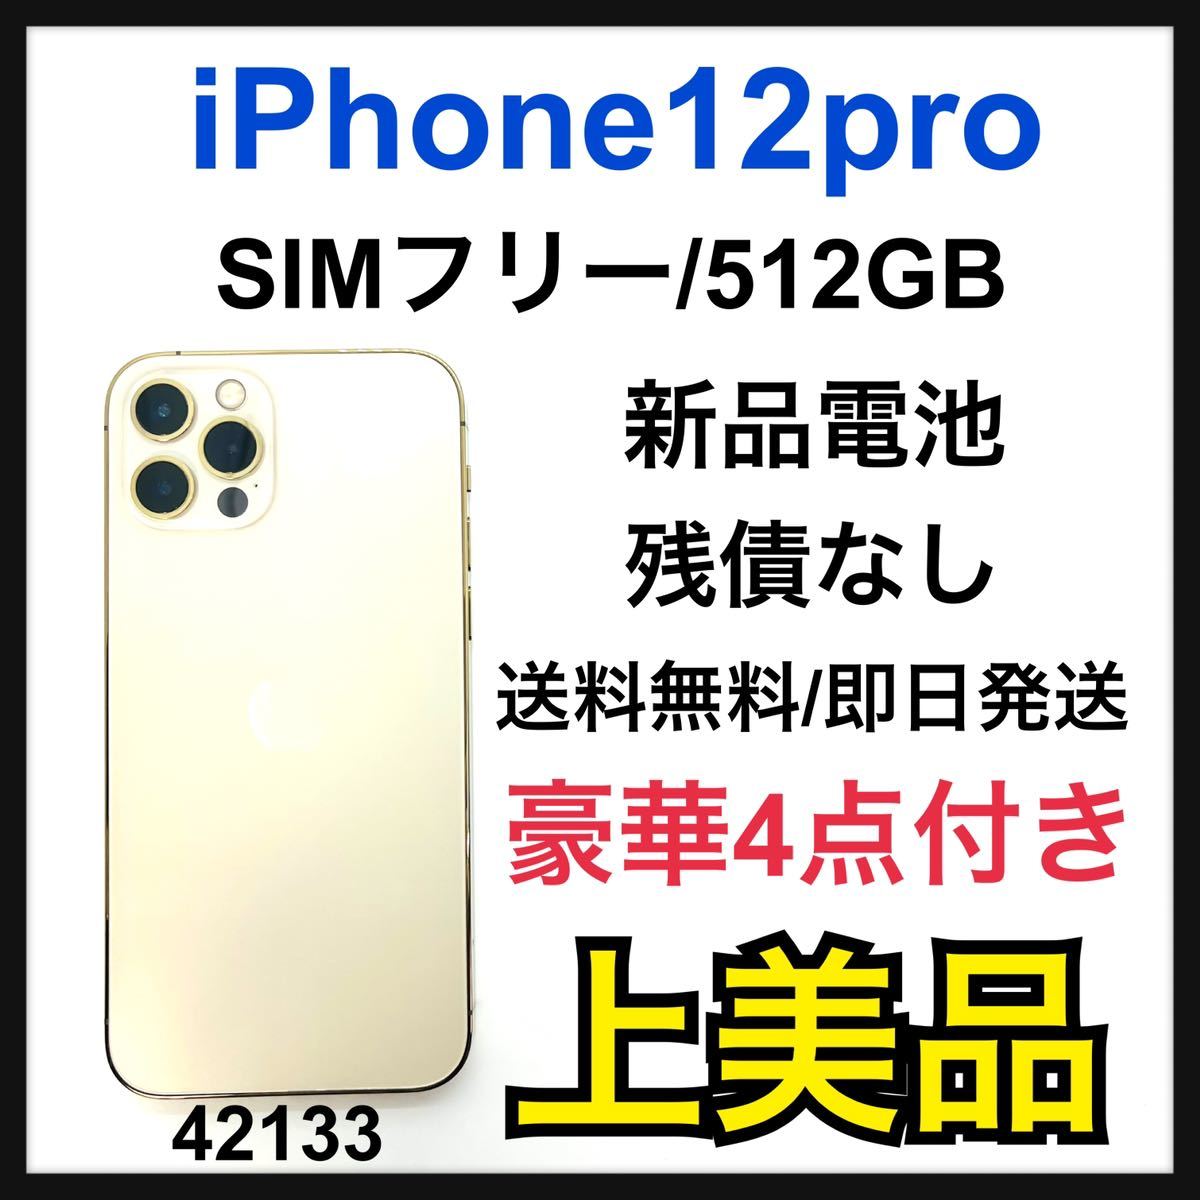 A 新品電池 iPhone 12 pro ゴールド 512 GB SIMフリー-